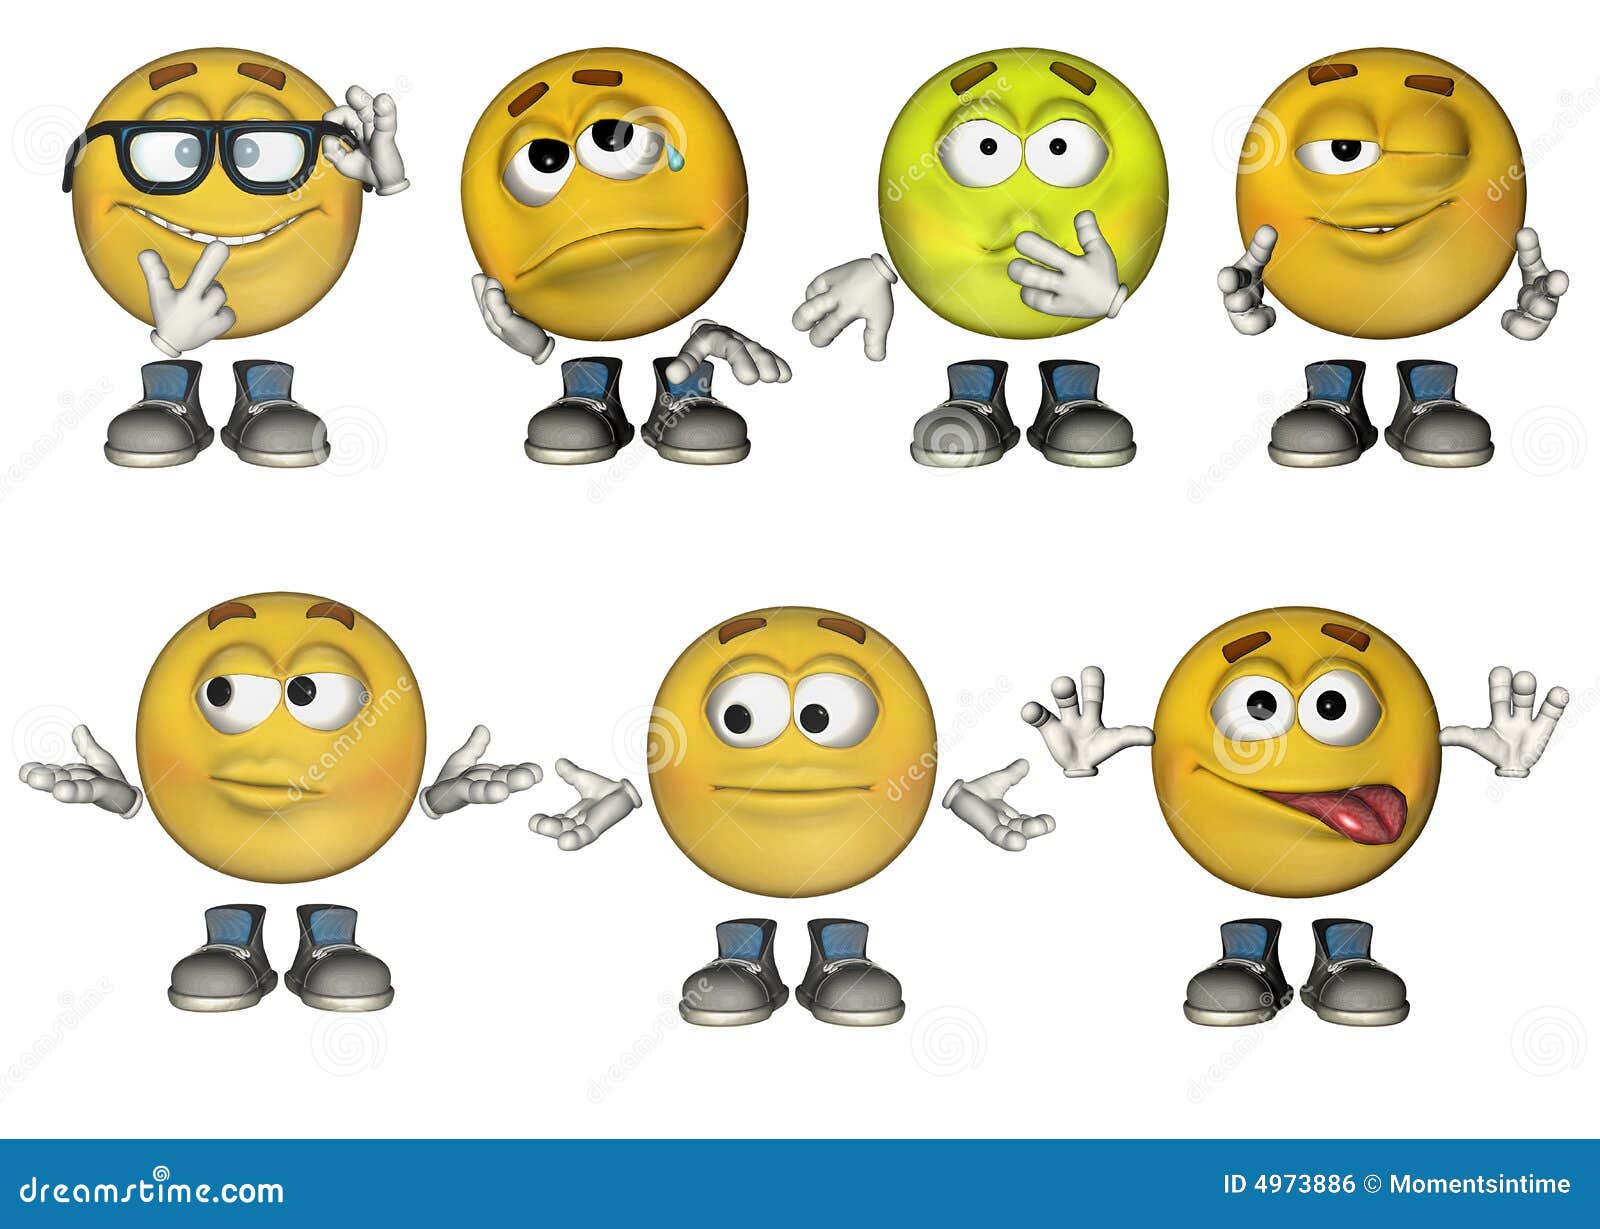 3d Emoticons Stock Illustrations – 3,232 3d Emoticons Stock Illustrations,  Vectors & Clipart - Dreamstime